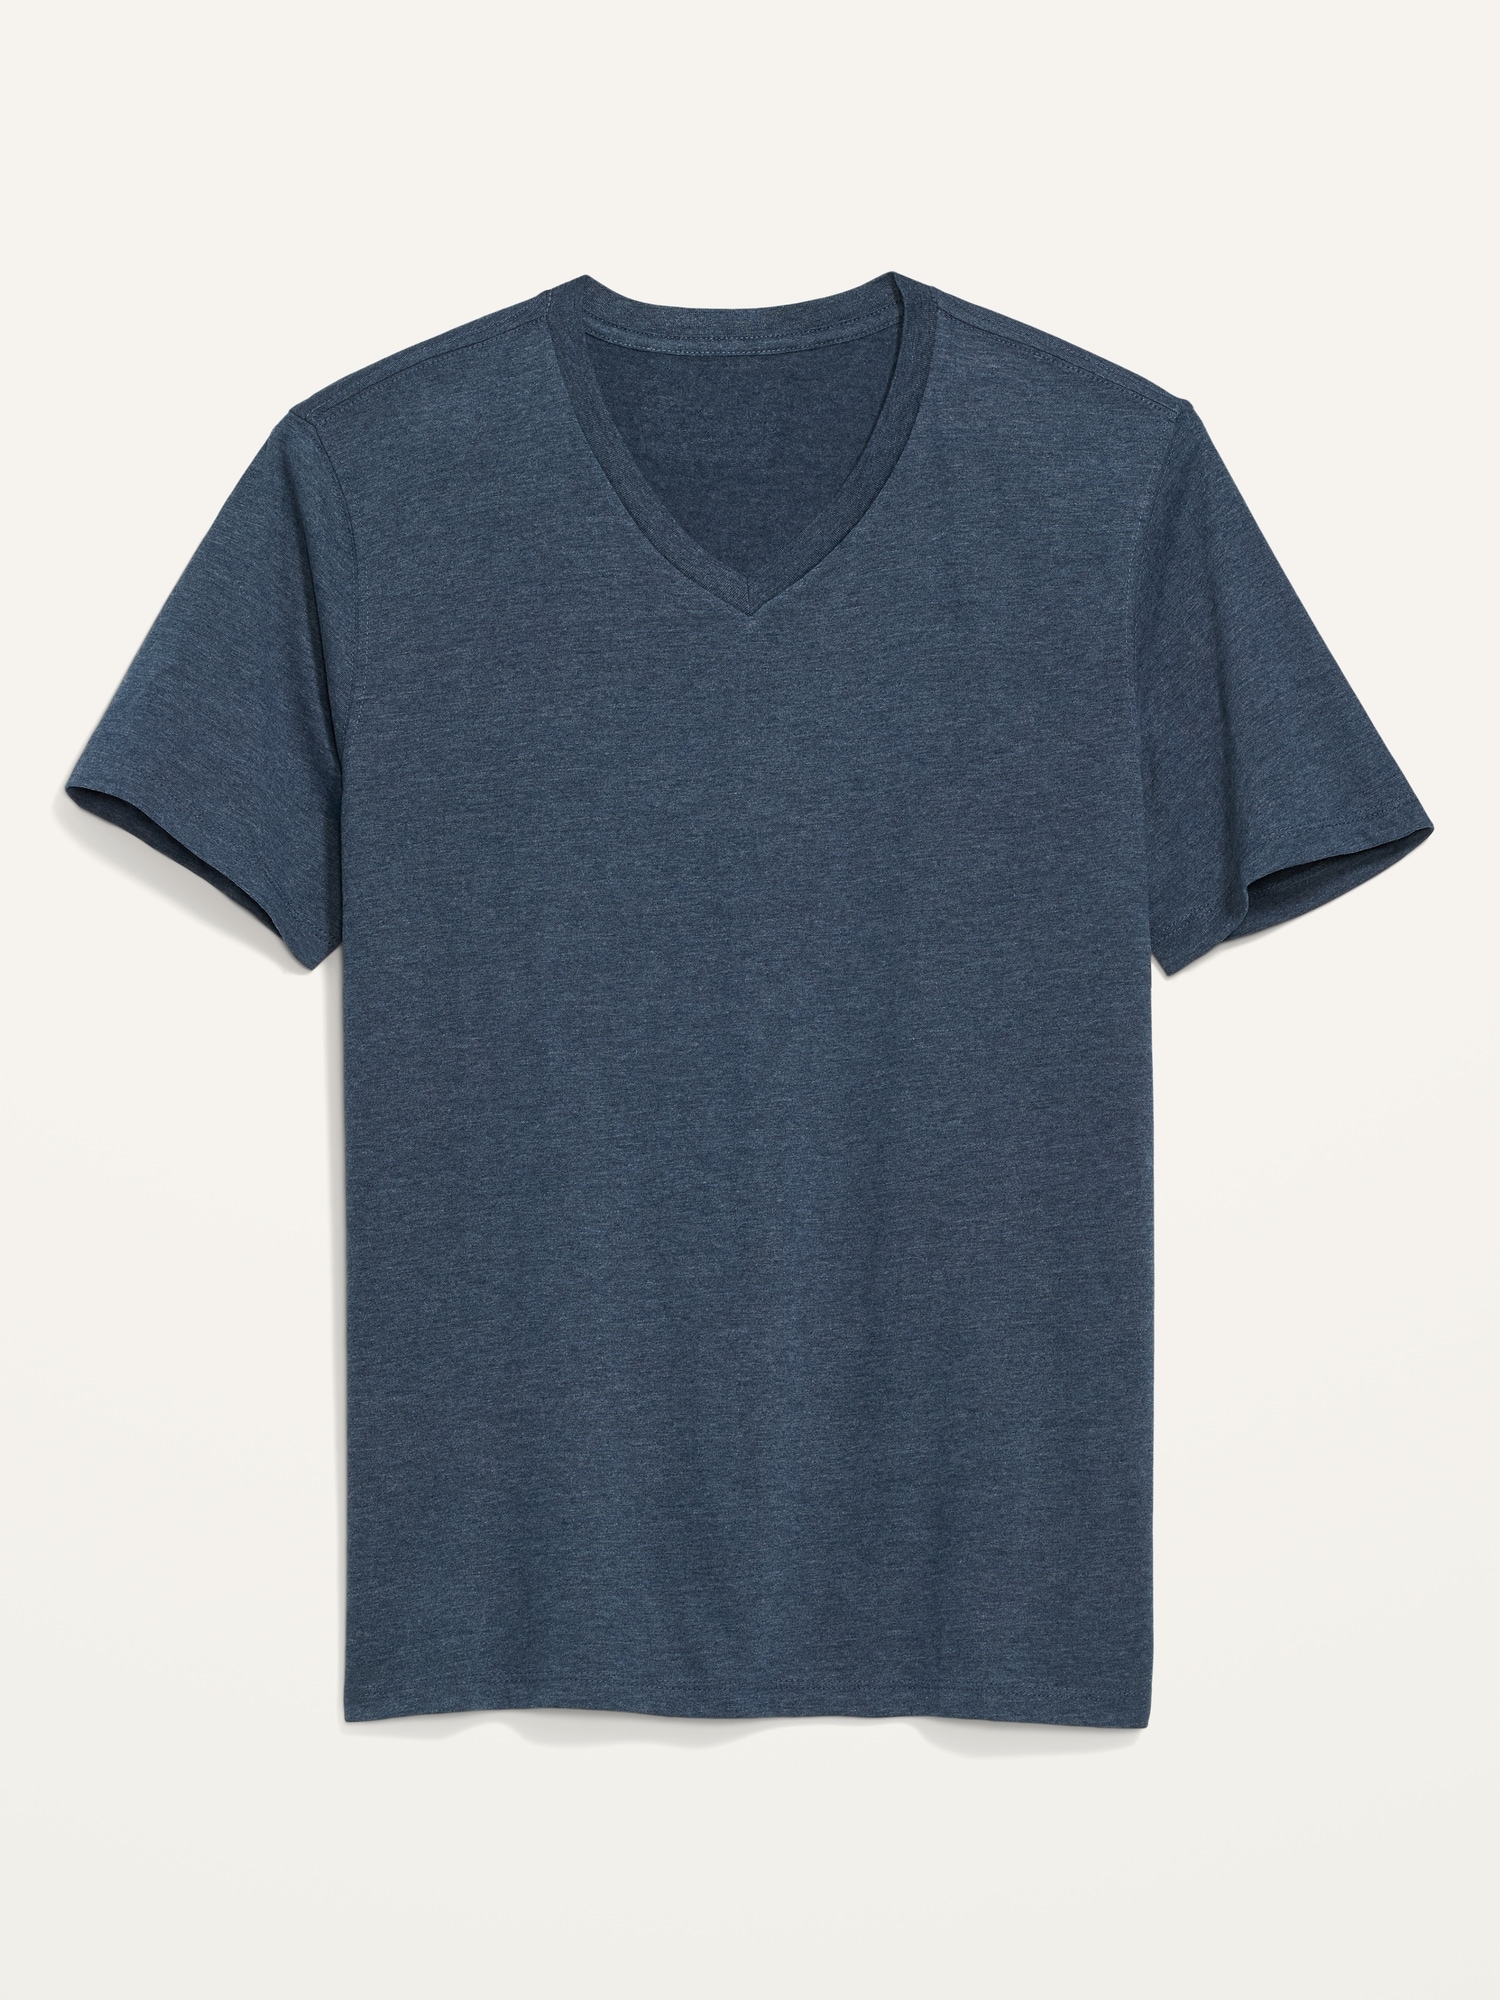 Old Navy Soft-Washed V-Neck T-Shirt for Men blue. 1